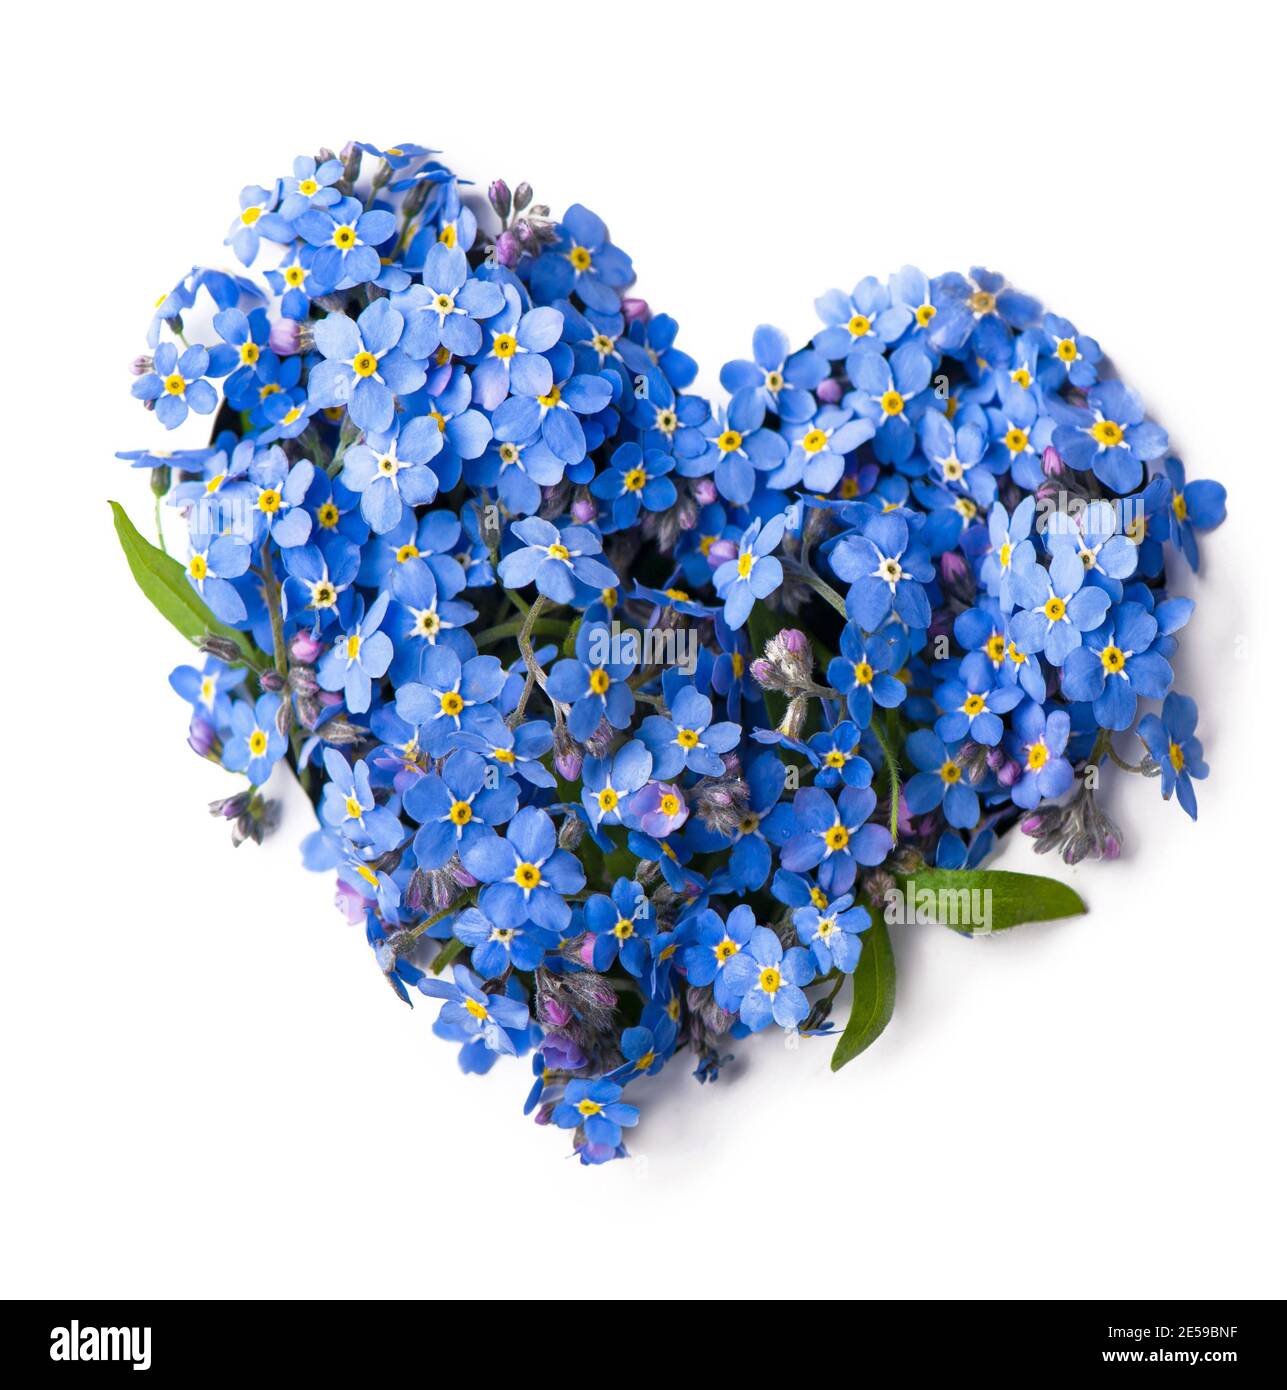 Non dimenticate di me, fiori piccoli a forma di cuore, isolati su bianco Foto Stock